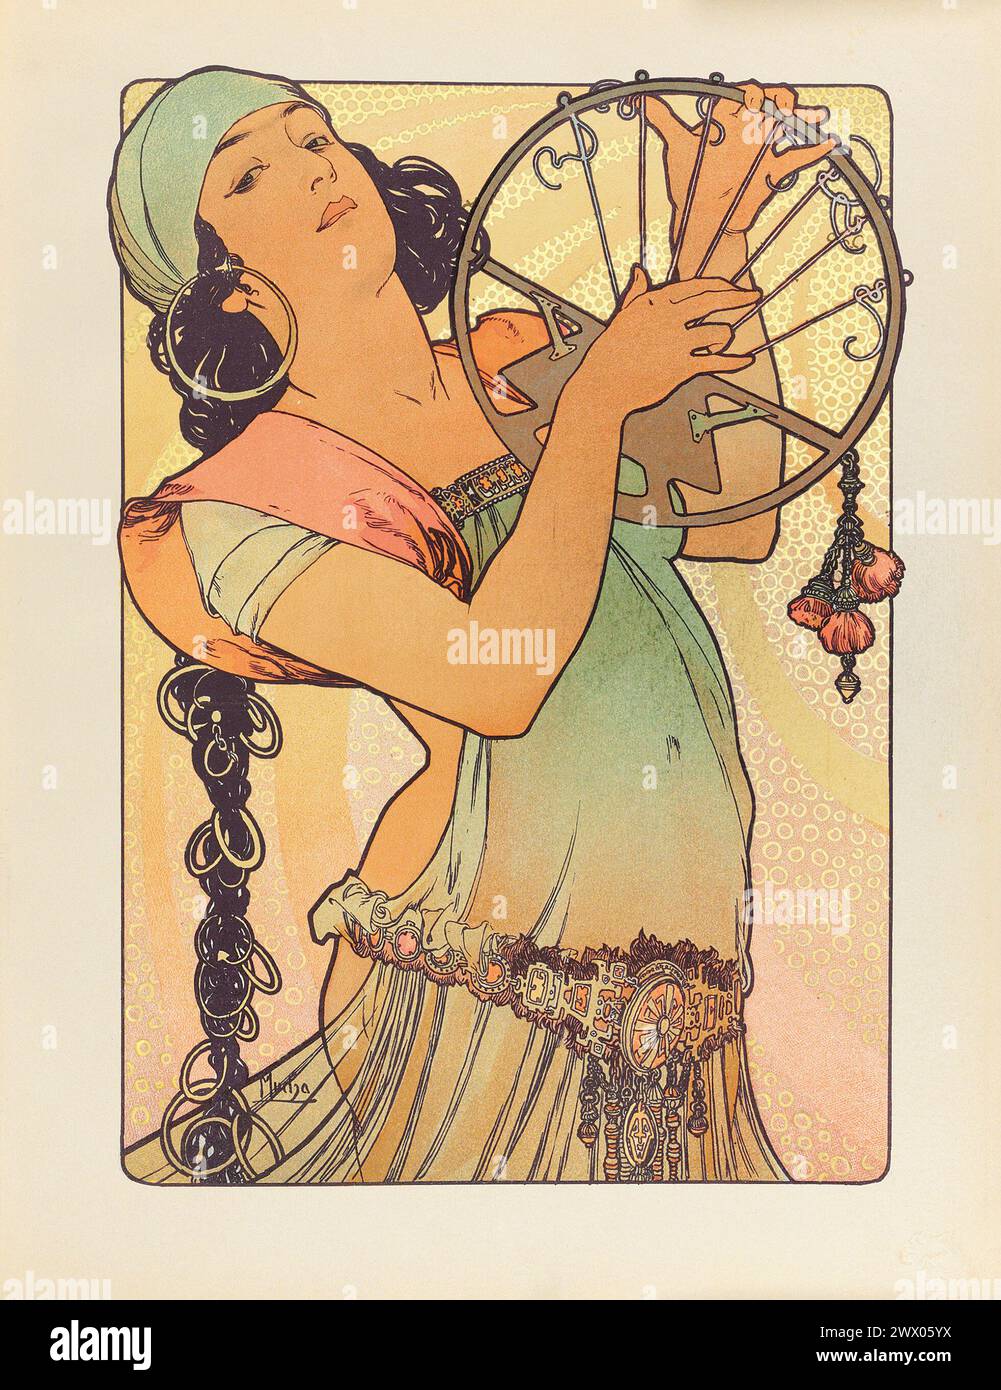 Stampa Art Nouveau vintage. Salome di Alphonse Mucha 1897. Da l'Estampe moderne Foto Stock